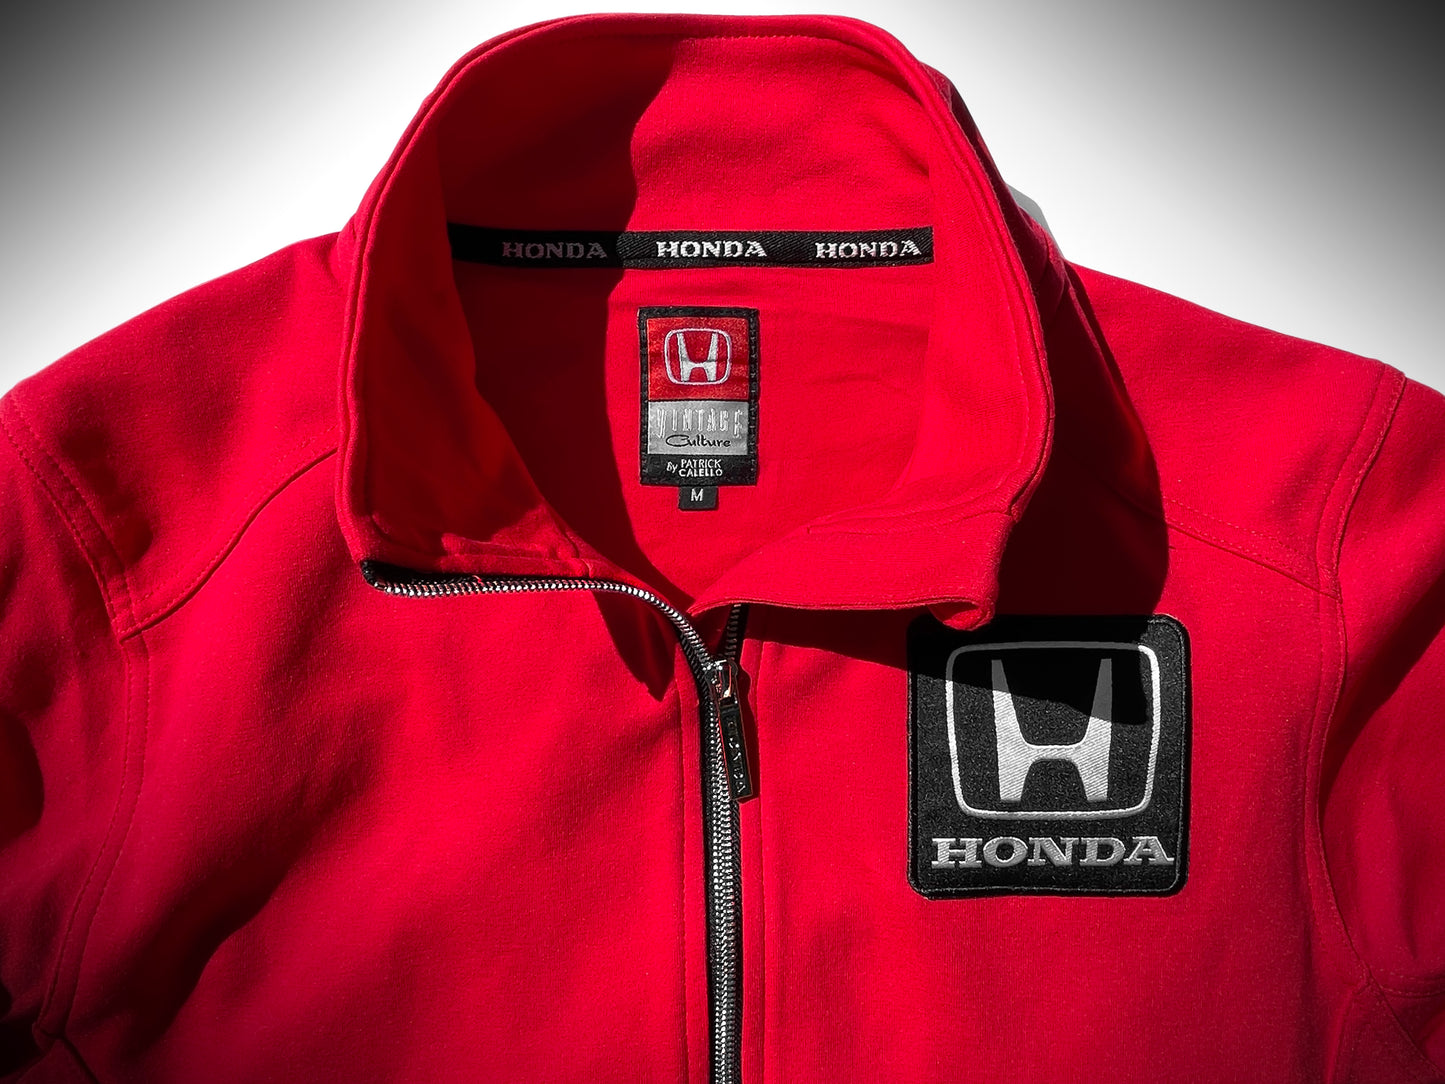 1989 Honda Grand Prix Racing Team Zipper Jacket